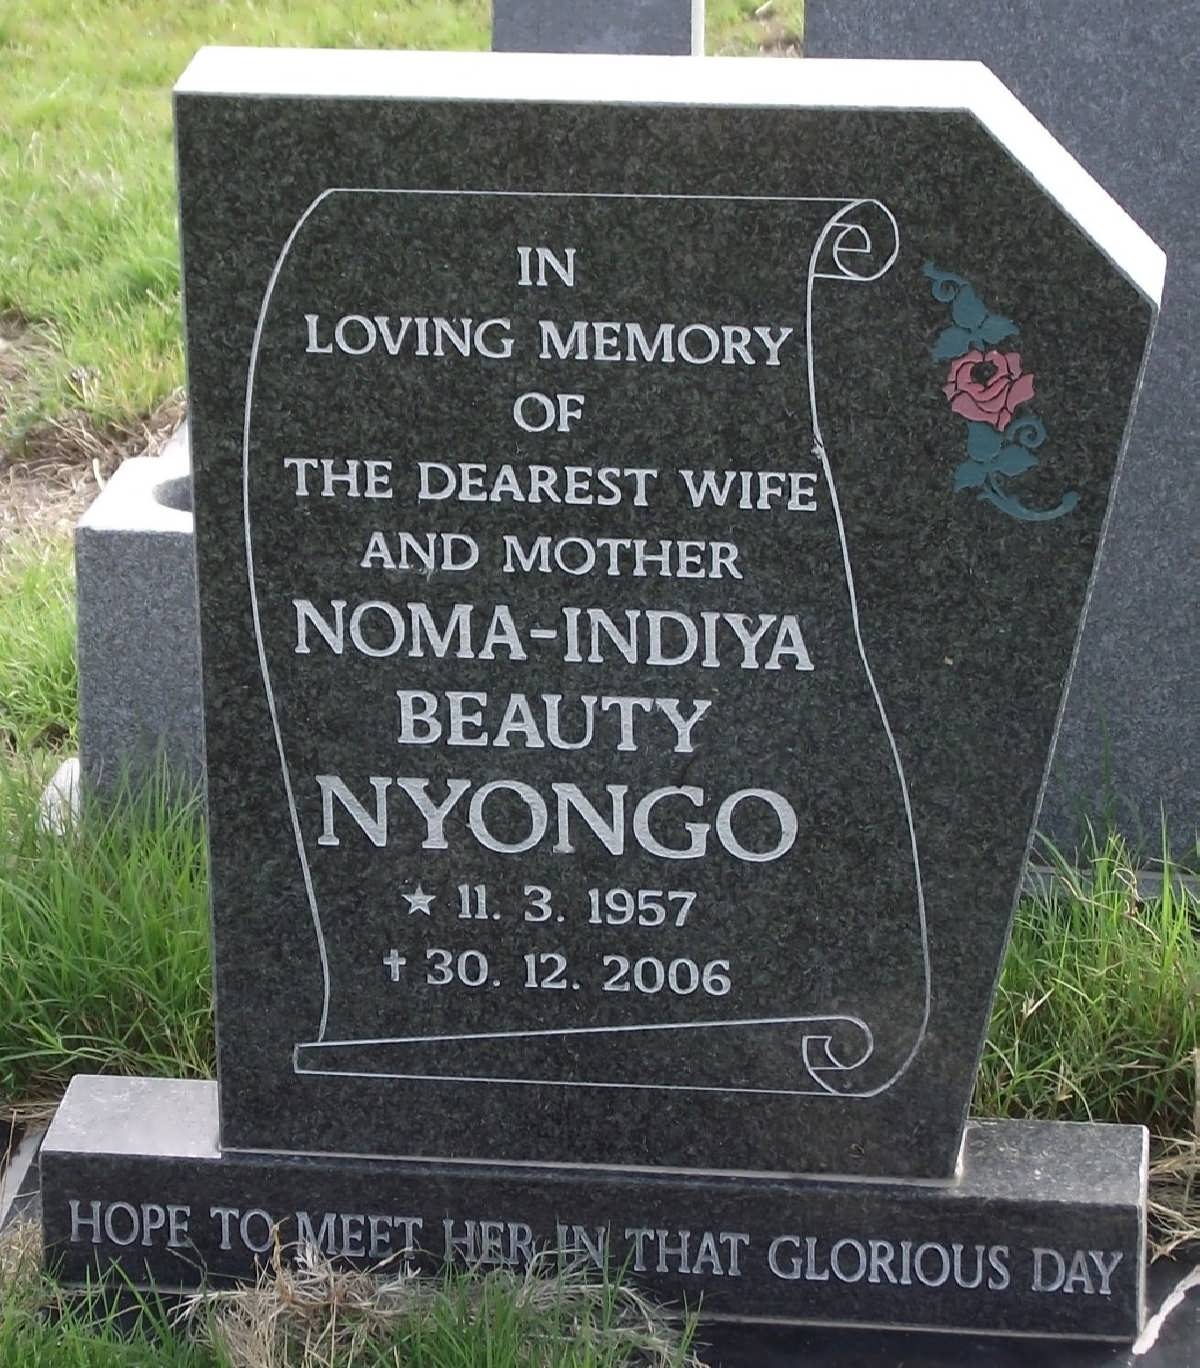 NYONGO Noma-Indiya Beauty 1957-2006